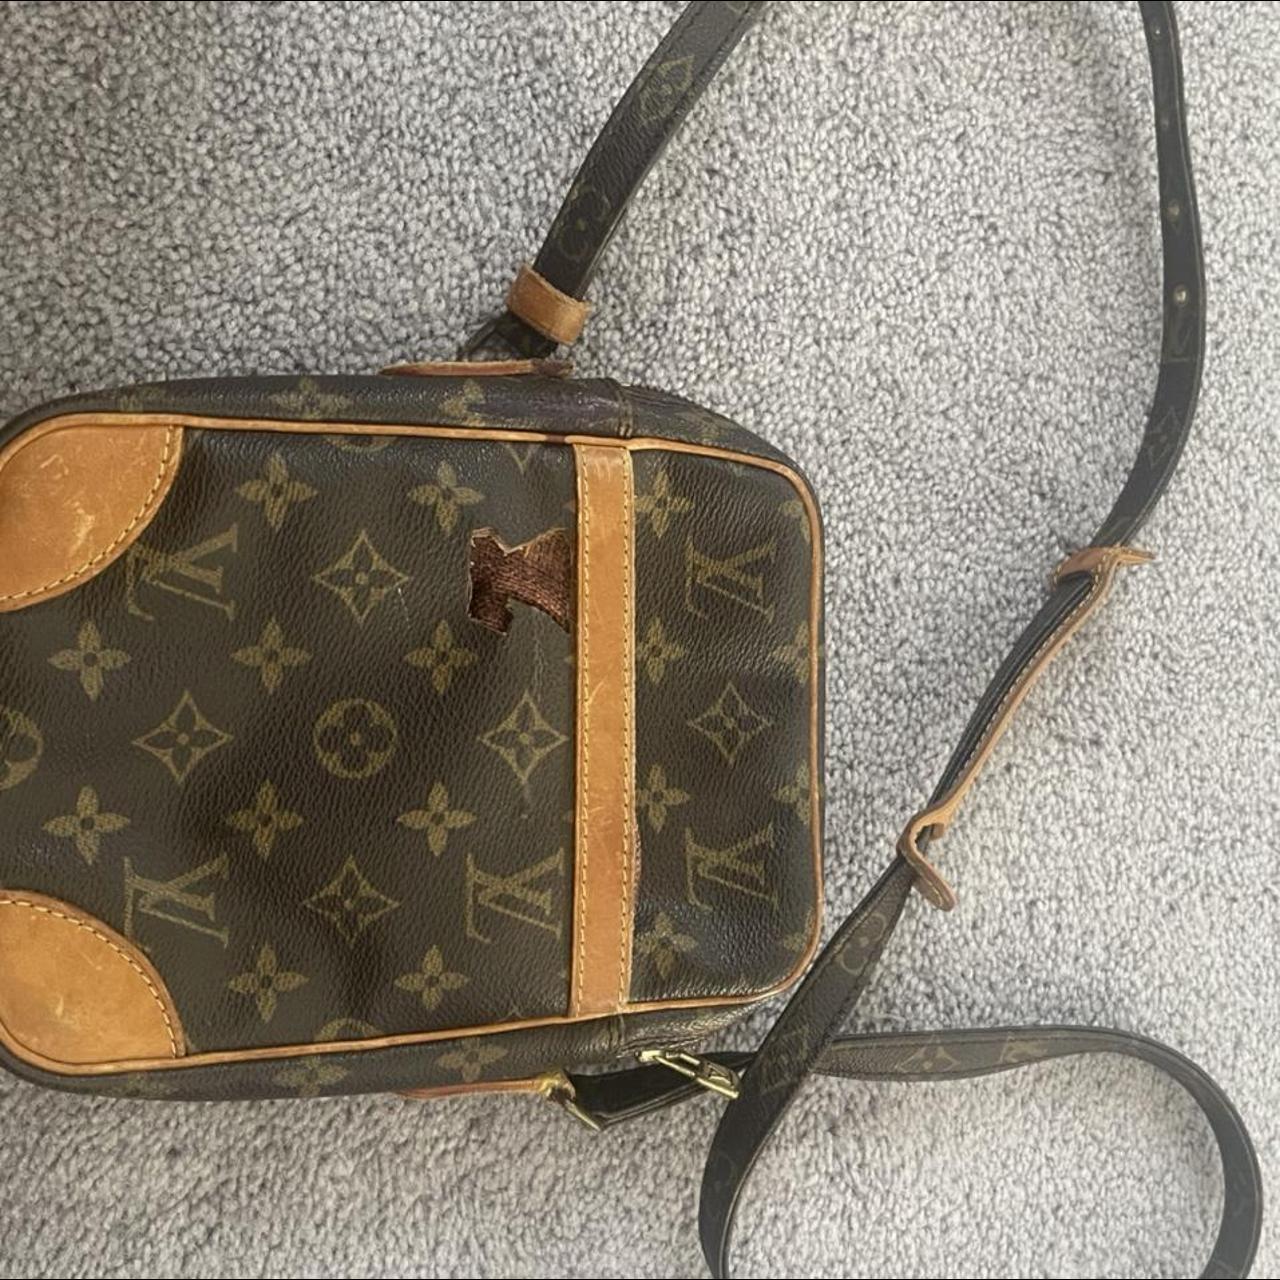 Louis Vuitton Bag Authentic pre-loved vintage LV - Depop